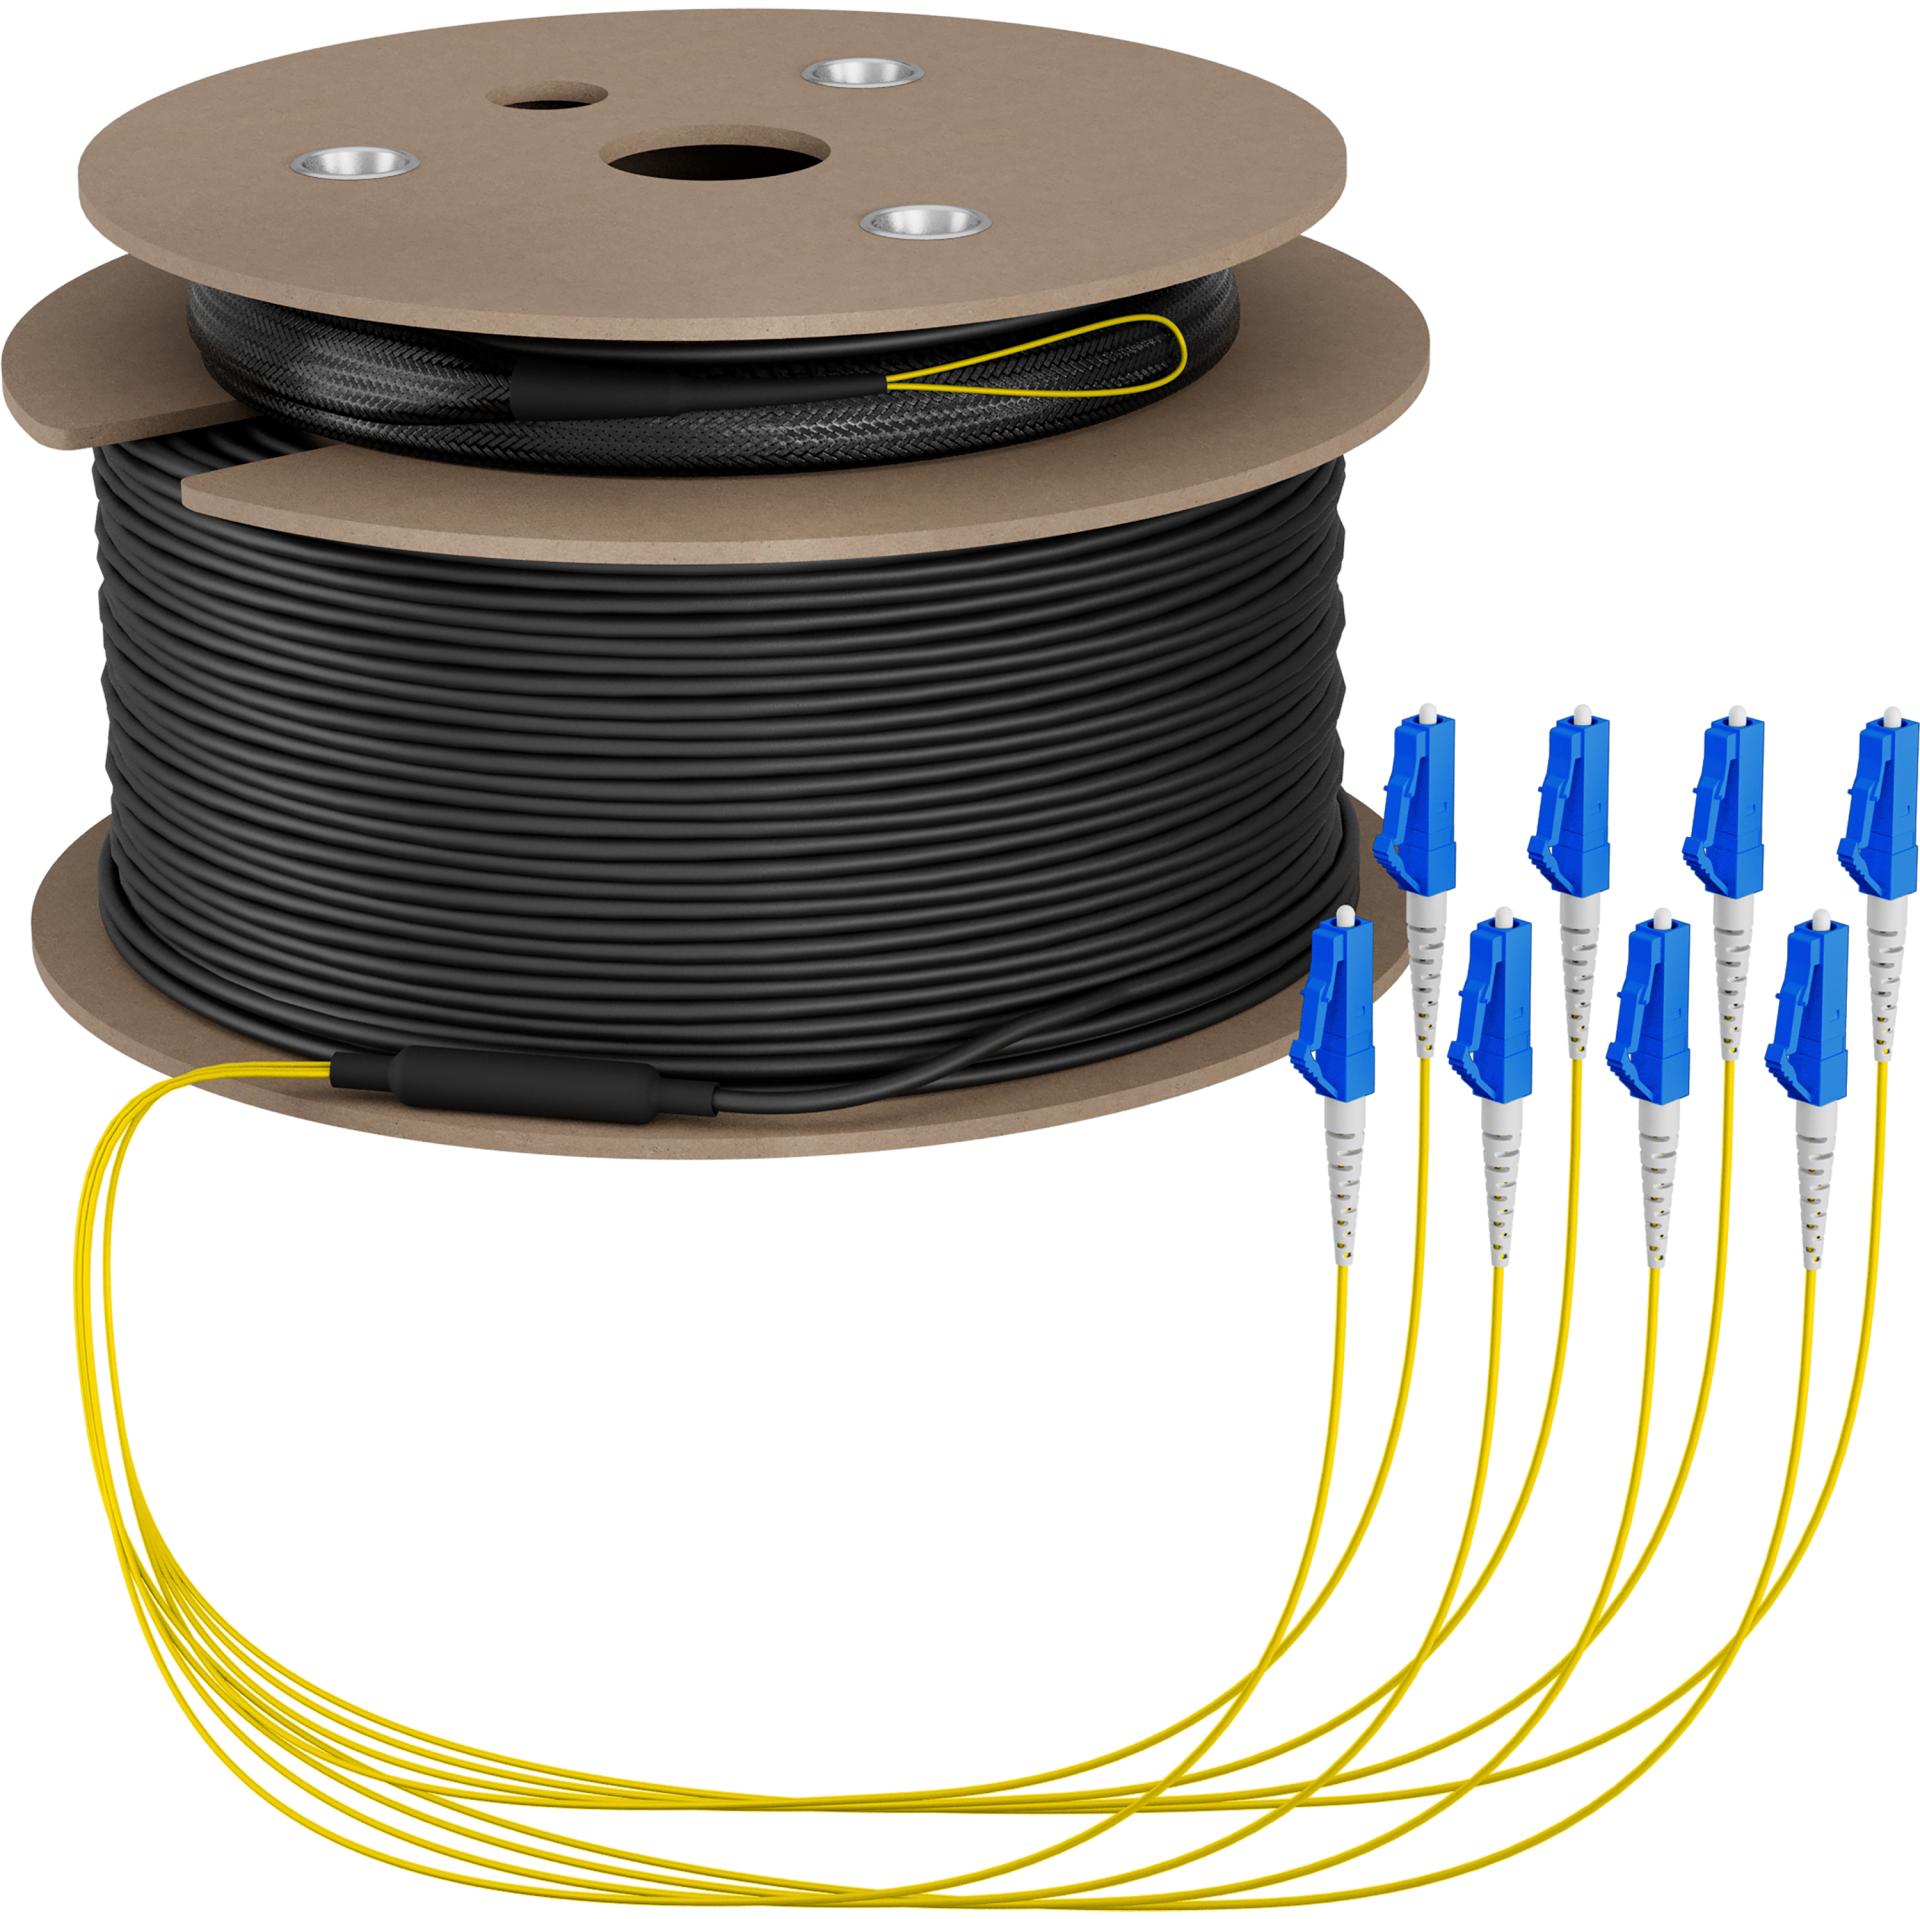 Trunk cable U-DQ(ZN)BH OS2 8E (1x8) LC-LC,140m Dca LSZH